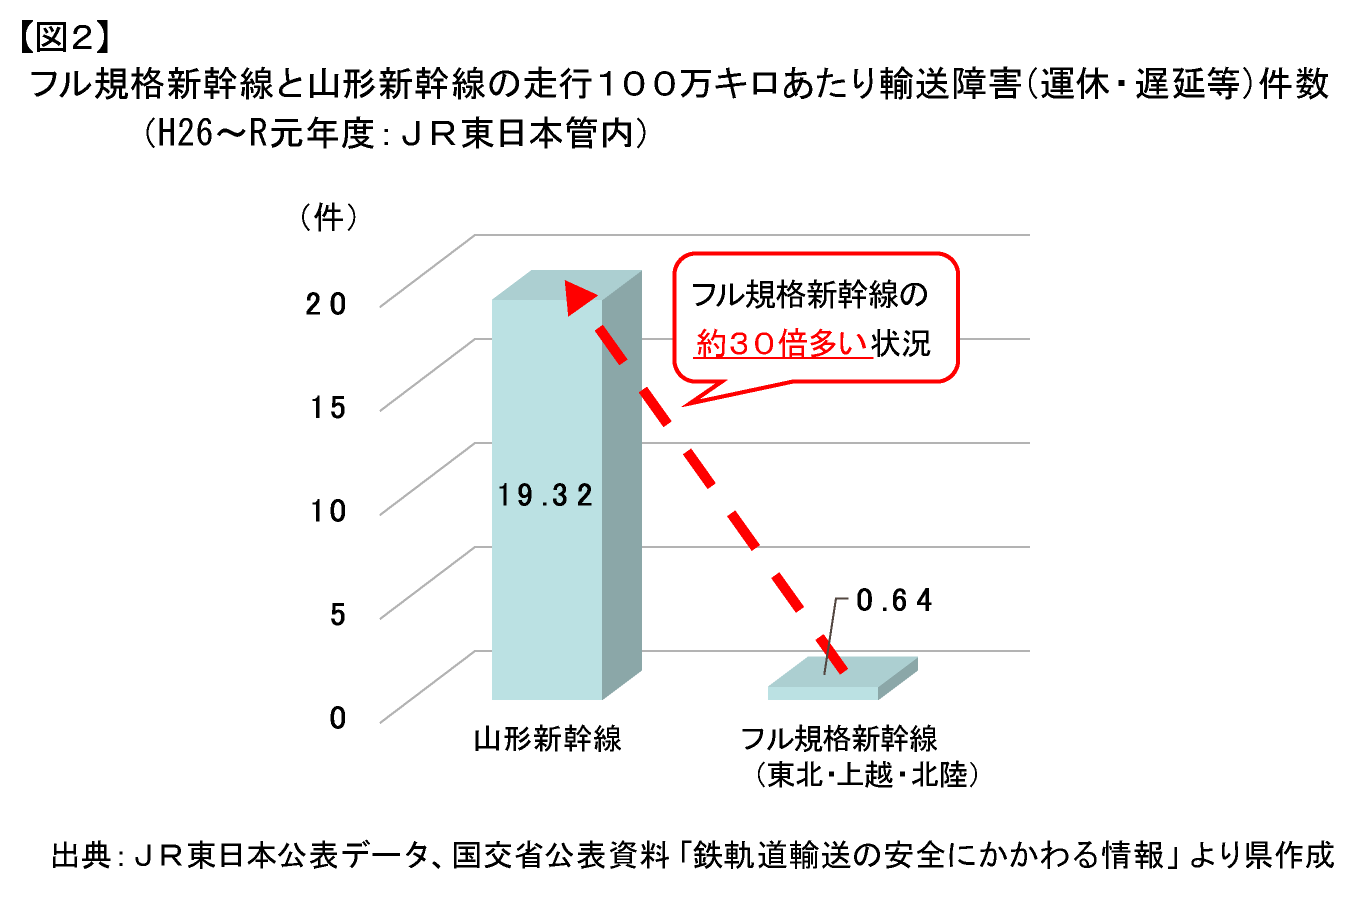 【図2】フル規格新幹線と山形新幹線の走行１００万キロあたり輸送障害(運休・遅延等)件数